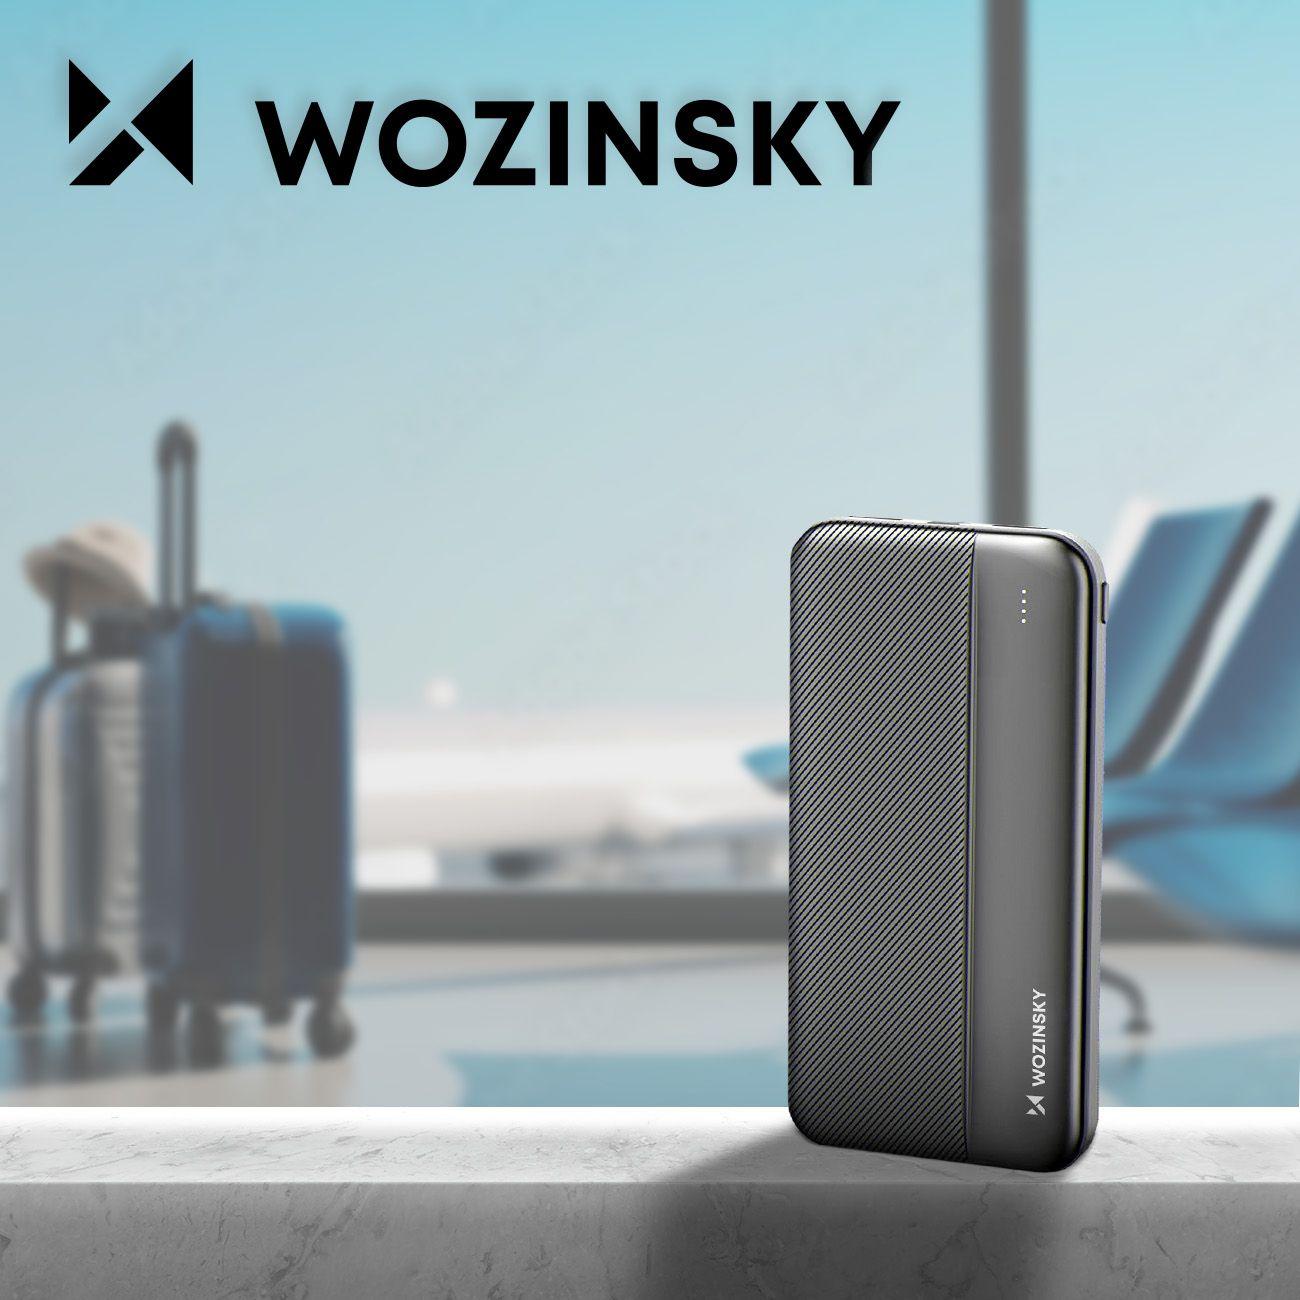 Wozinsky power bank 10000mAh 2 x USB černá WPBBK1 - powerbanka pro 2 zařízení s inteligentním čipem